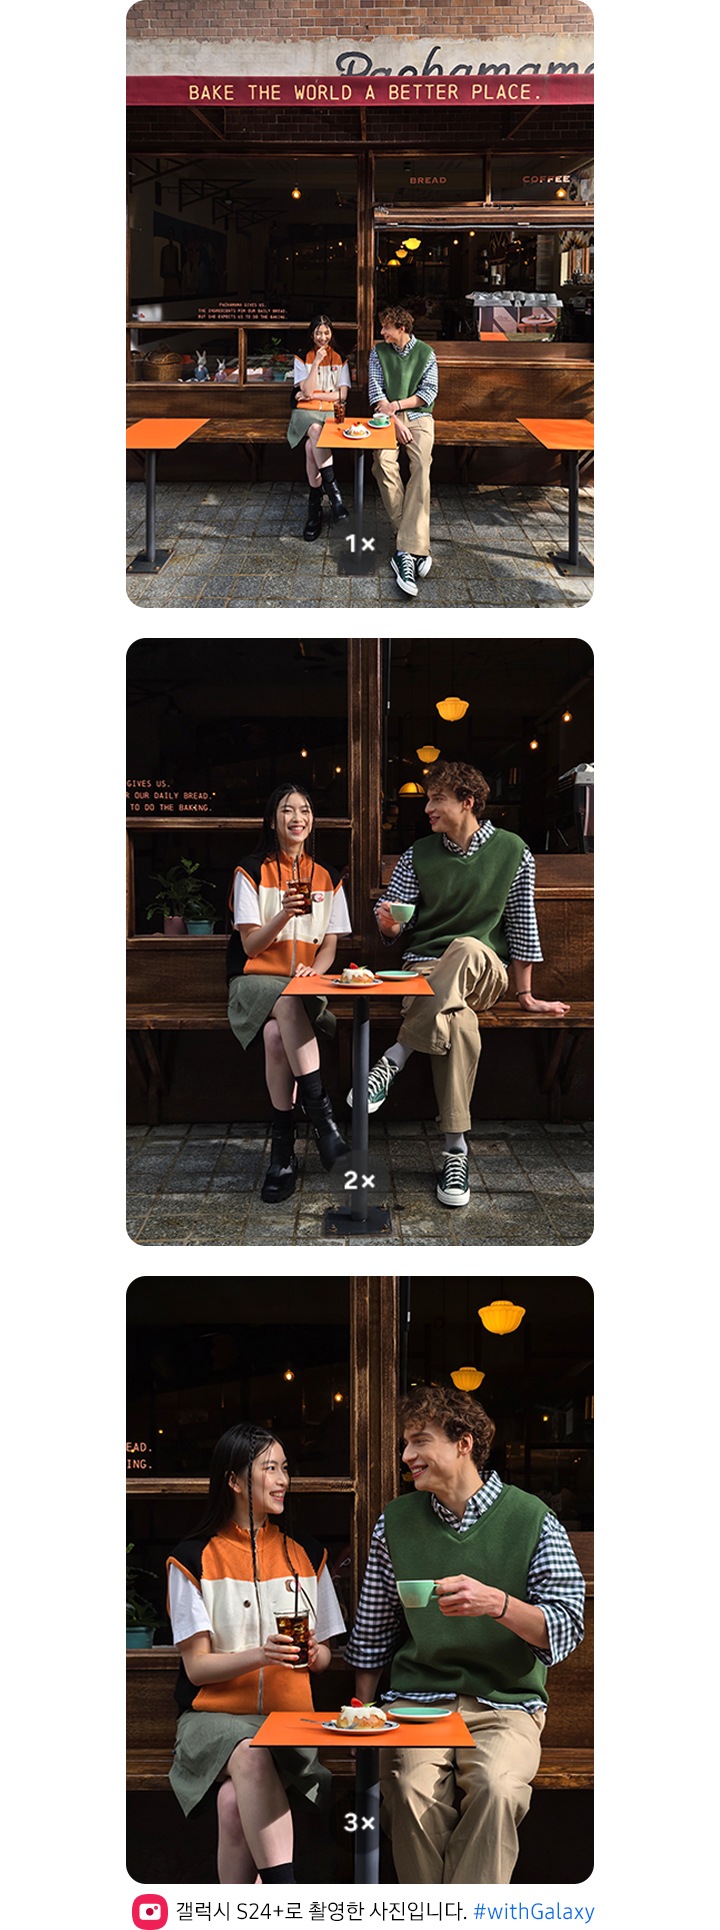 카페 앞에 앉은 두 사람의 모습을 1배 줌으로 촬영한 풍부한 컬러감의 사진입니다. 카페 앞에 앉은 두 사람의 모습을 2배 줌으로 촬영한 풍부한 컬러감의 사진입니다.카페 앞에 앉은 두 사람의 모습을 3배 줌으로 촬영한 풍부한 컬러감의 사진입니다.